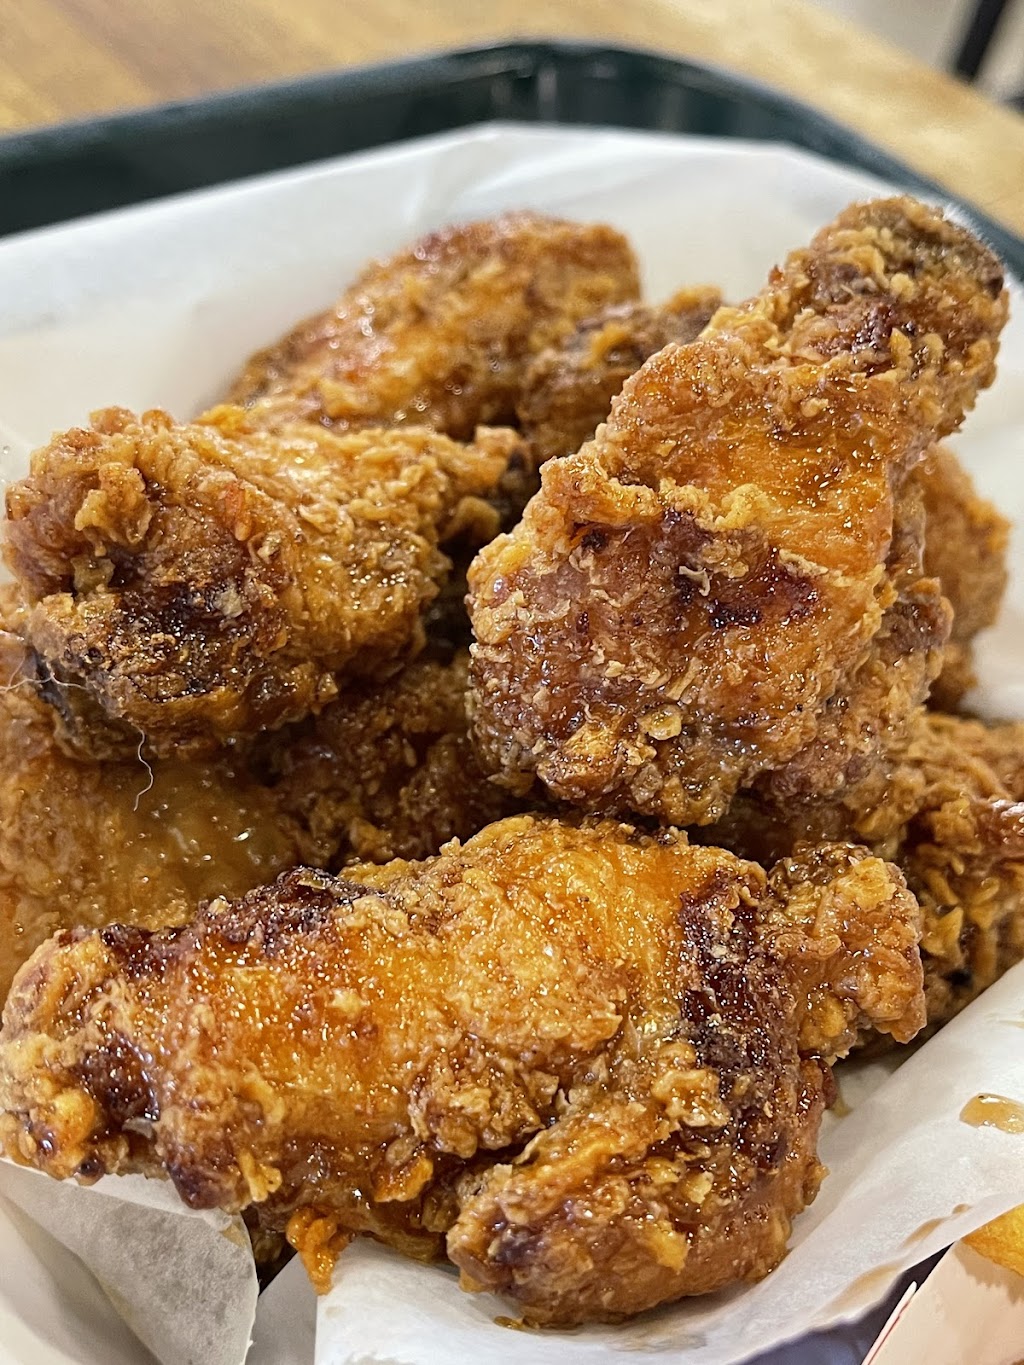 Don Chicken Korean Fried Chicken | restaurant | 11301 Lakeline Blvd, Austin, TX 78717, USA | 5125786270 OR +1 512-578-6270